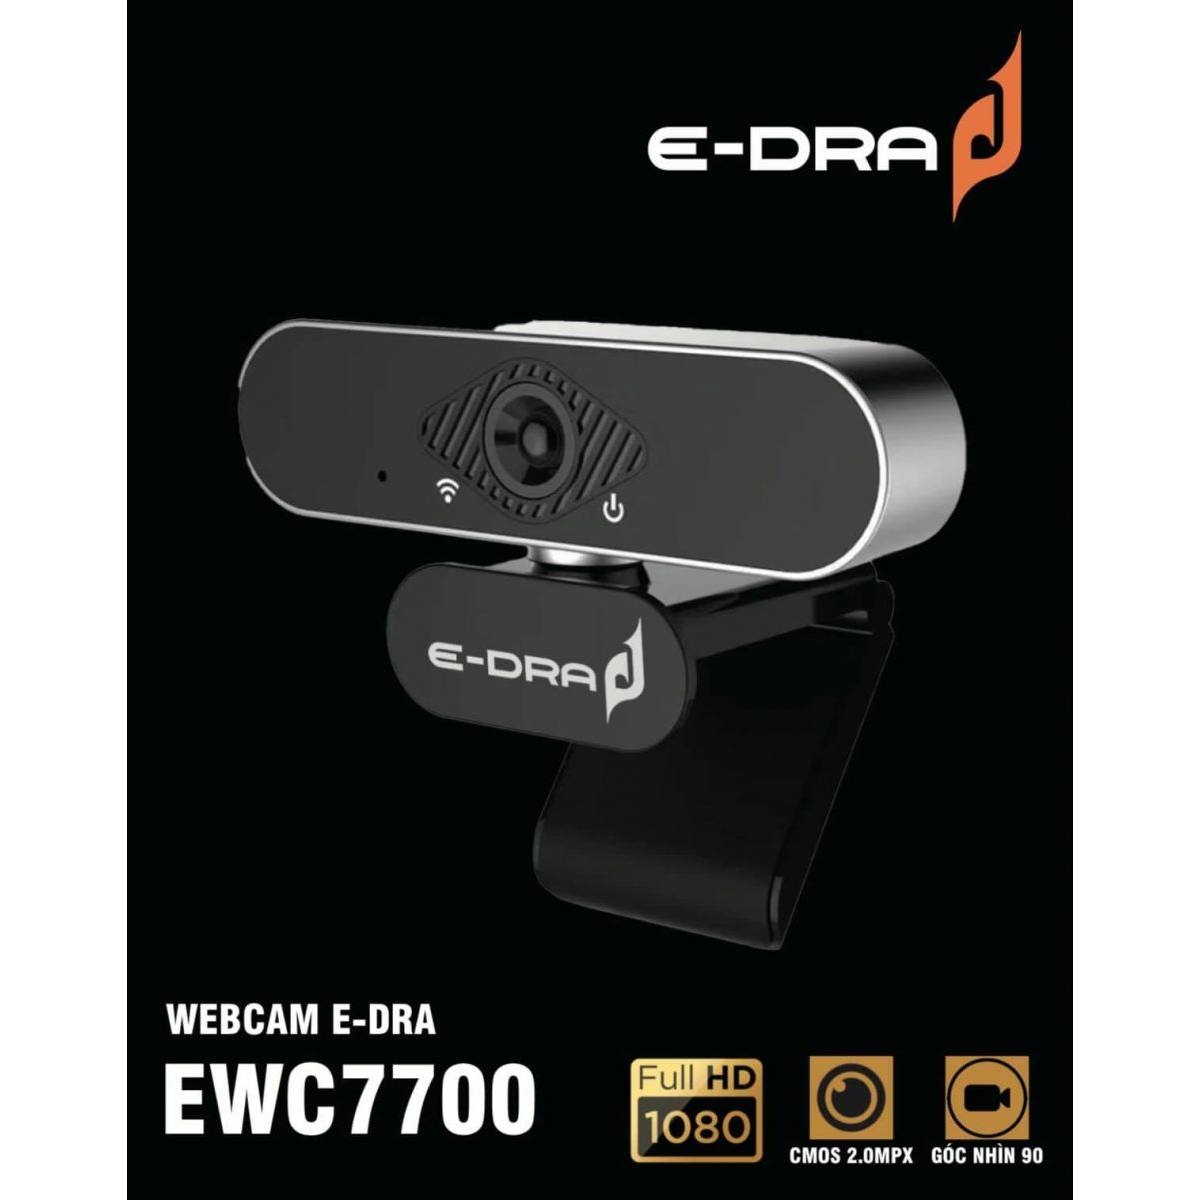 Webcam E-DRA EWC7700 FHD 1080P